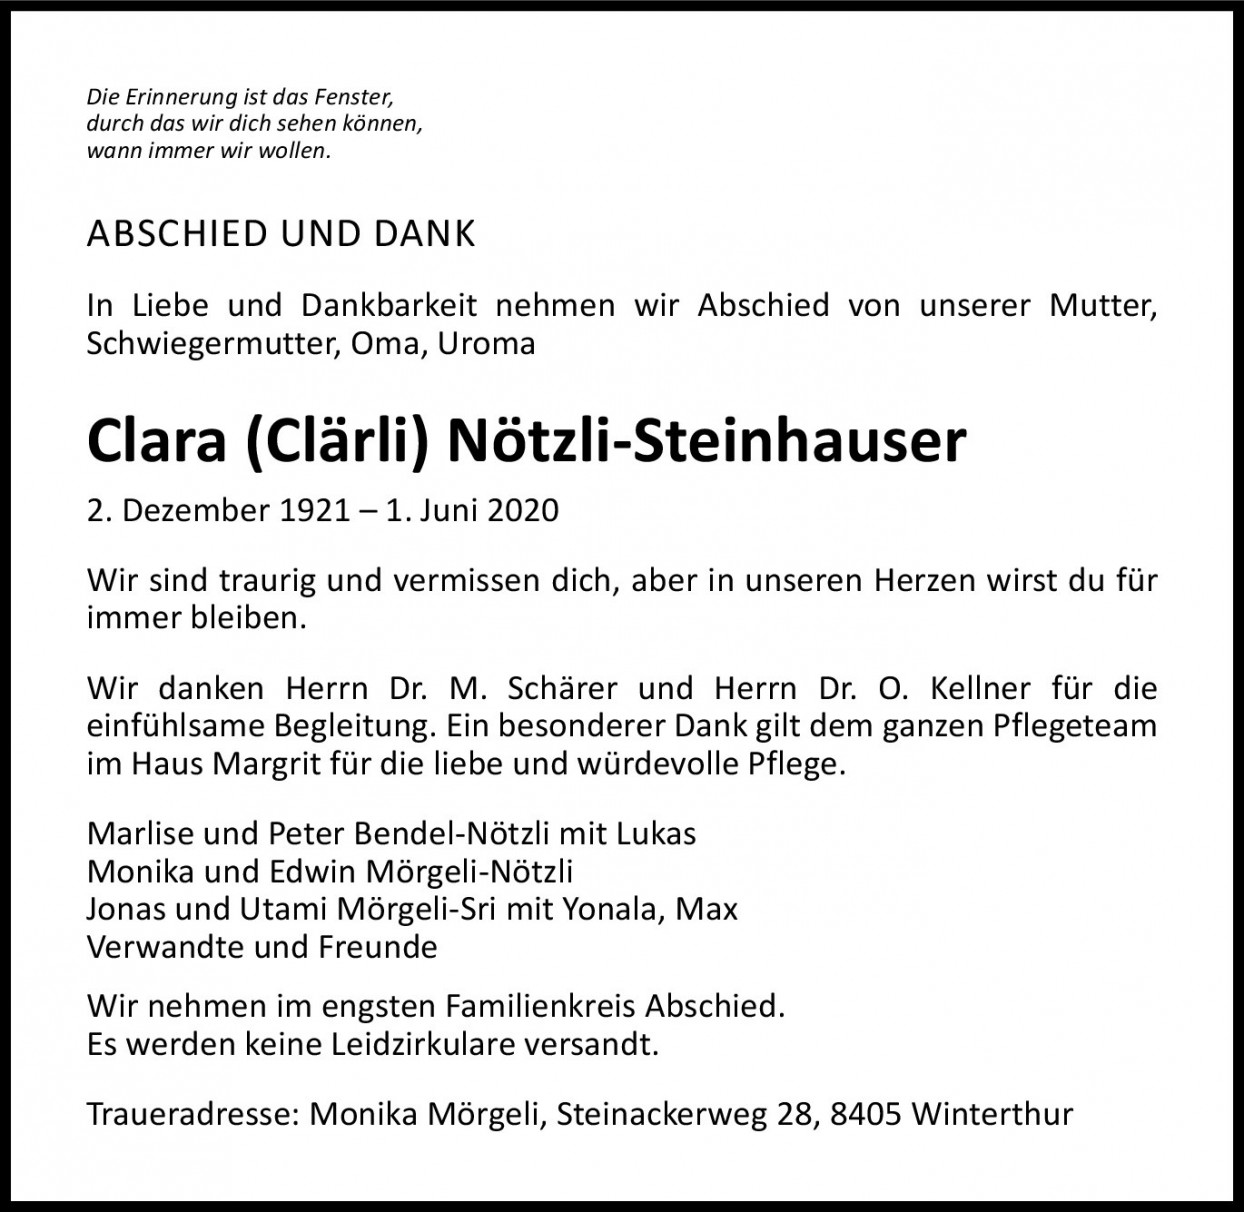 Clara Nötzli-Steinhauser